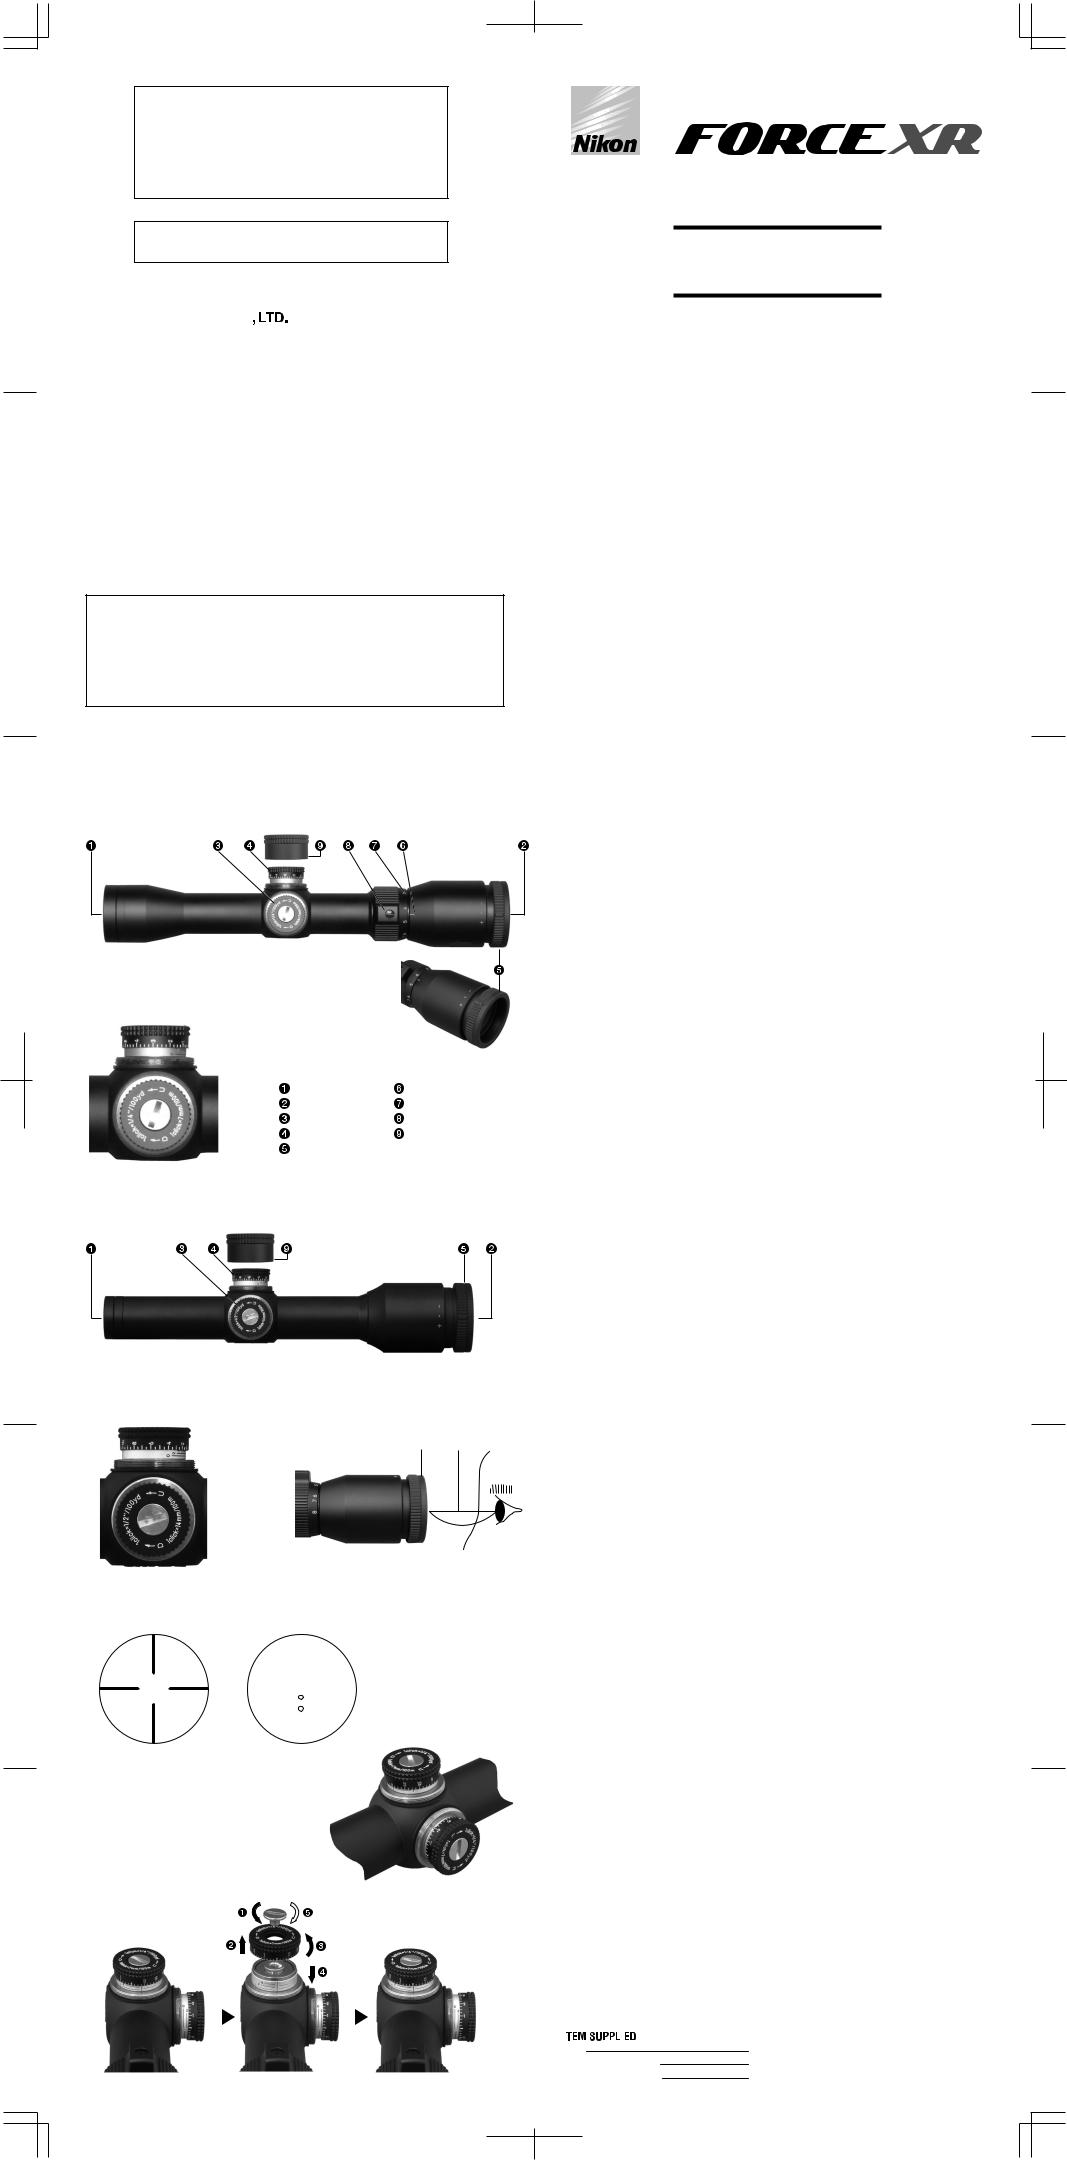 Nikon Force XR User Manual